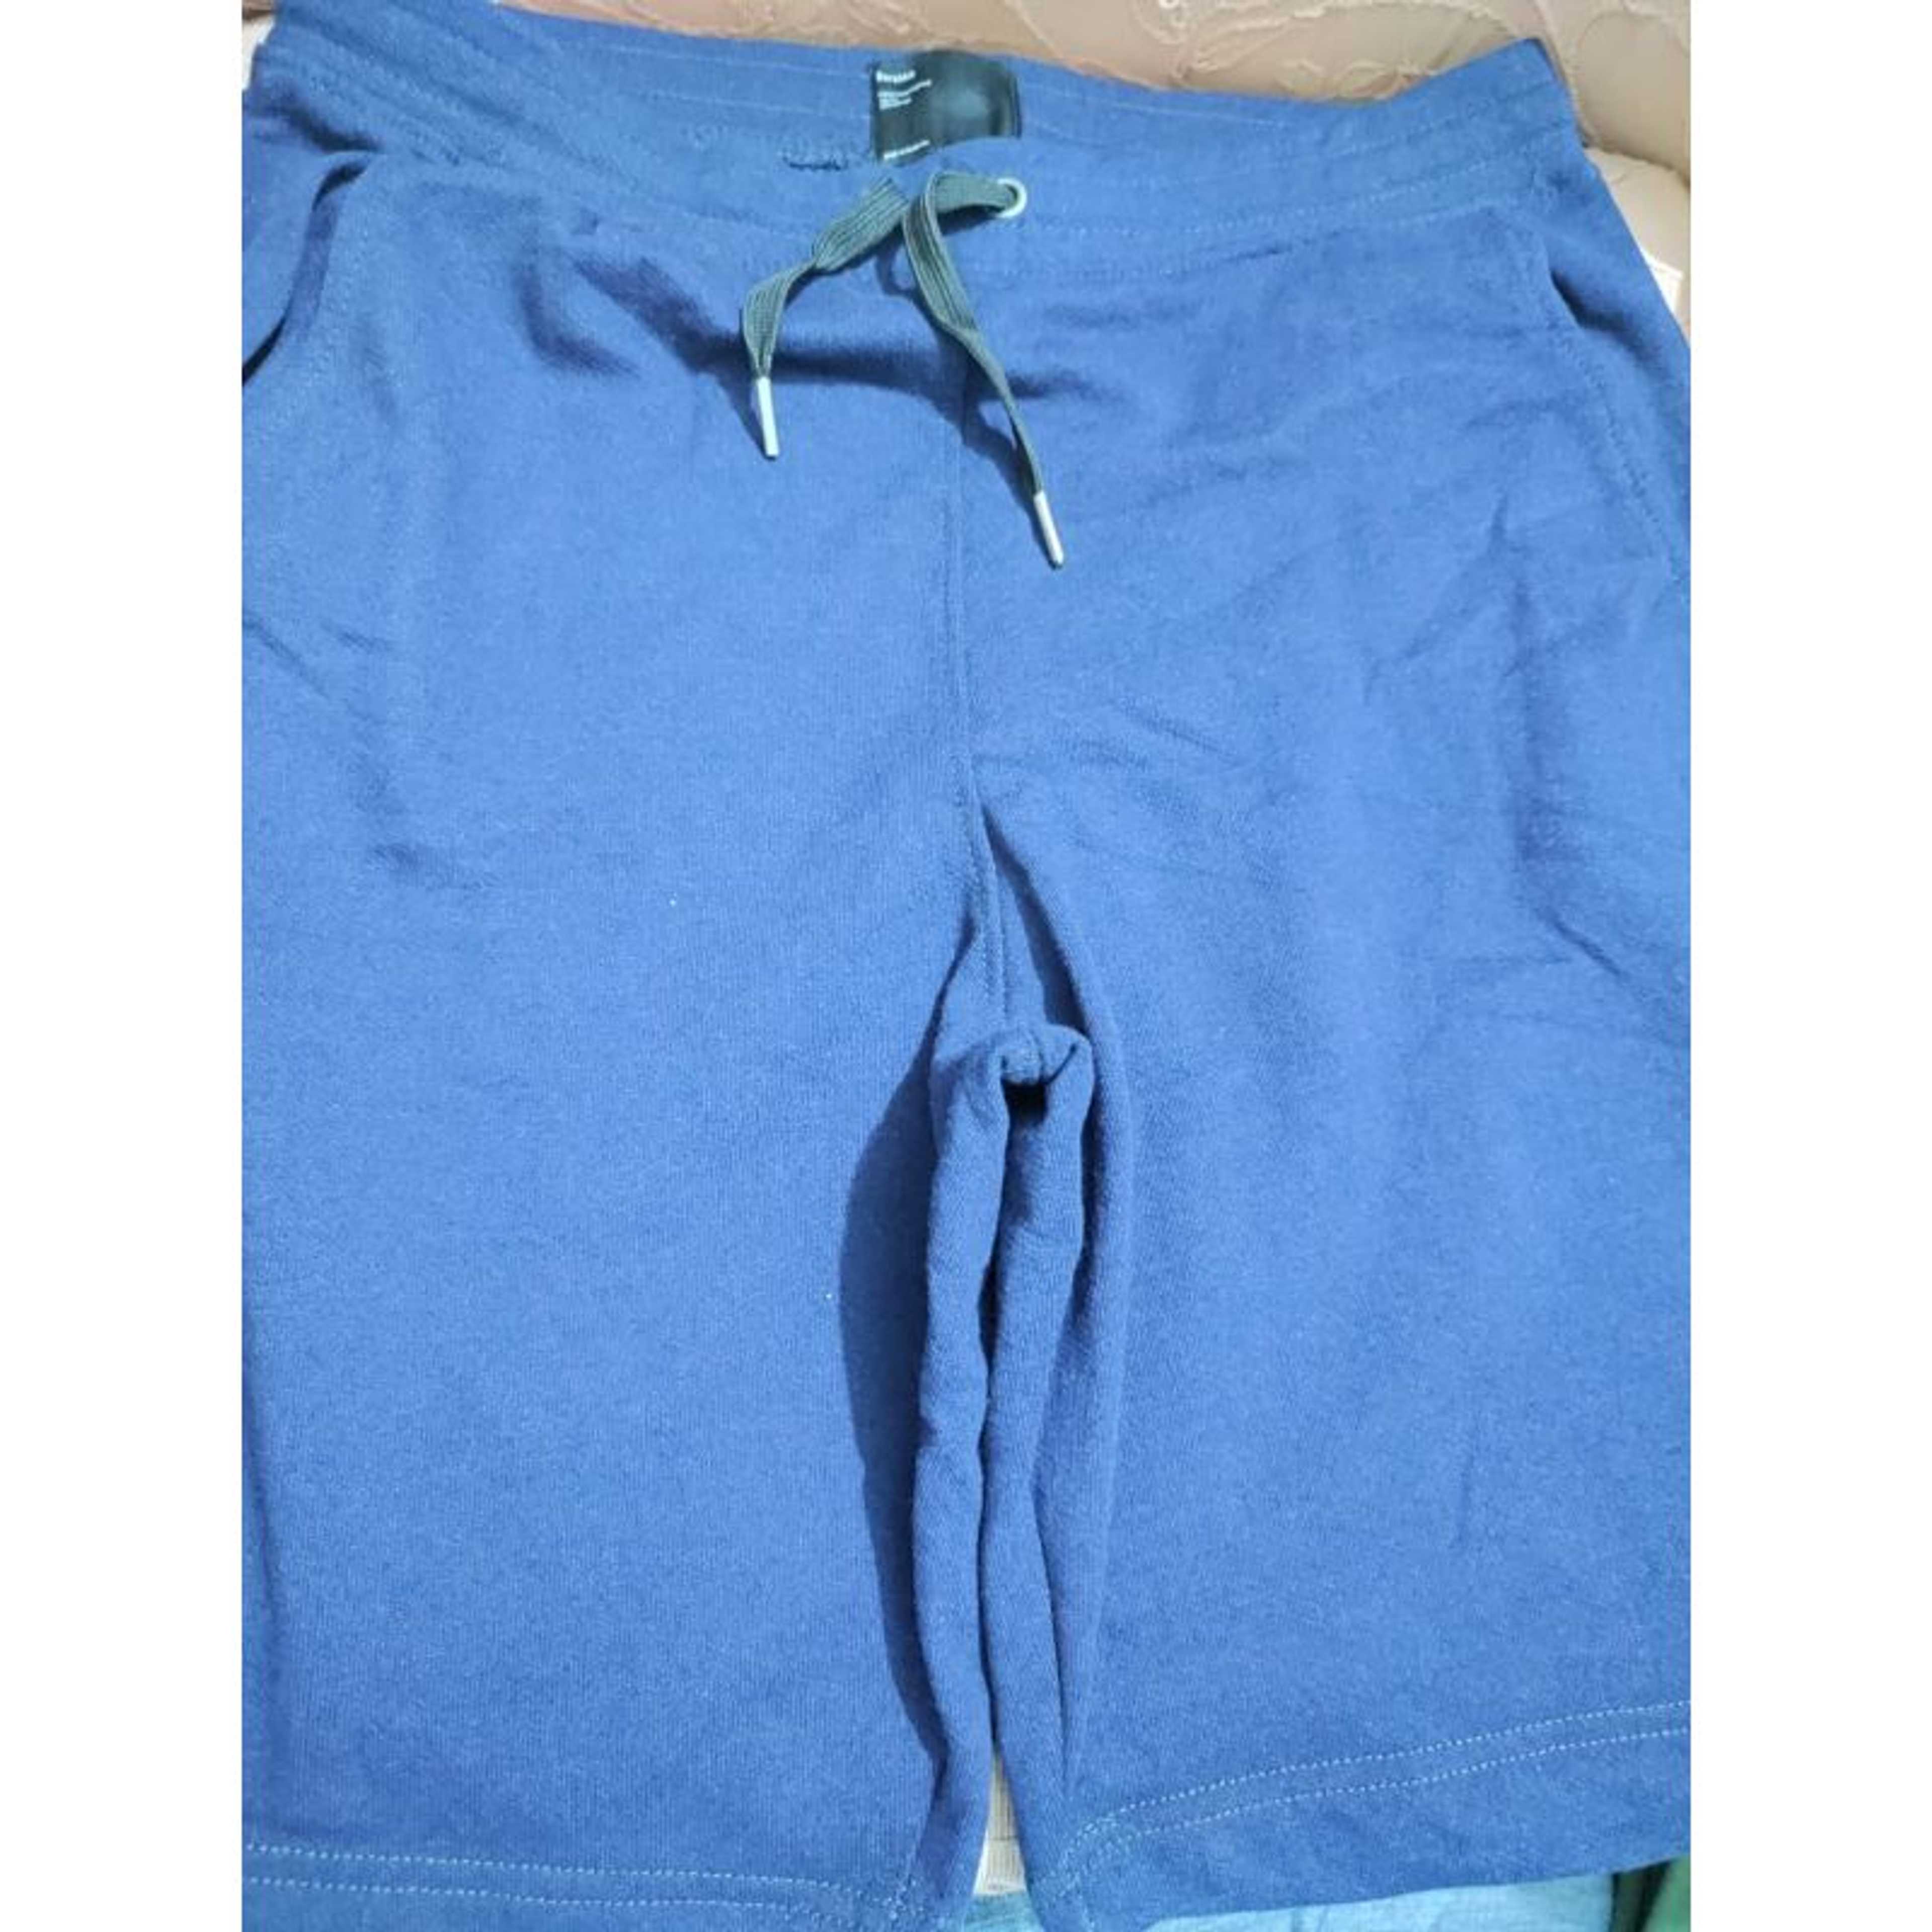 Branded Leftover Shorts in Light Blue Color